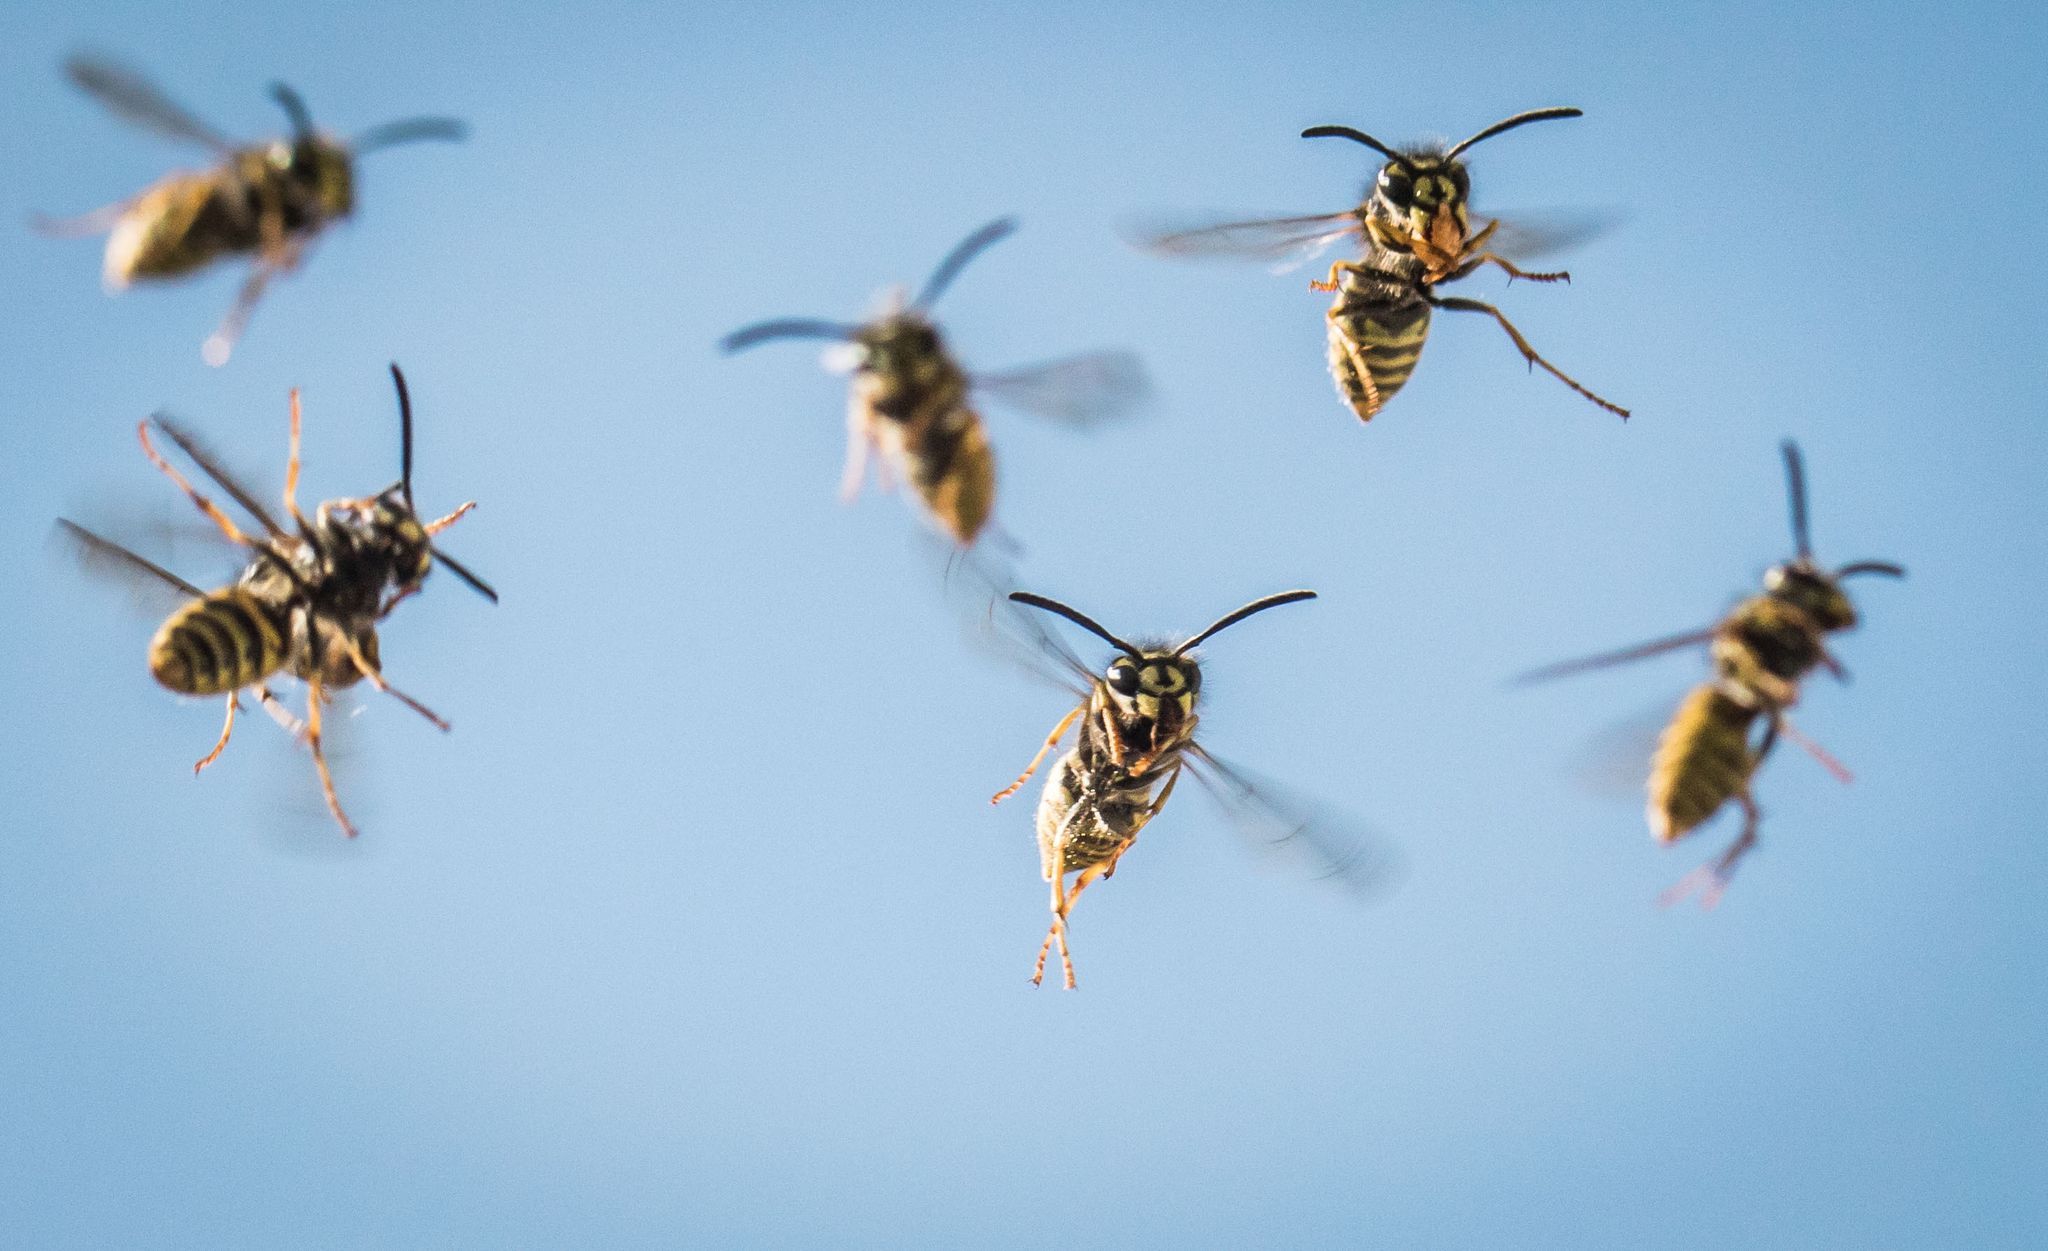 Ab August ist der Aufbau des Wespenvolkes vorbei und die meisten Wespen haben keine Aufgabe mehr. Sie fliegen stattdessen umher und suchen sich Futter.